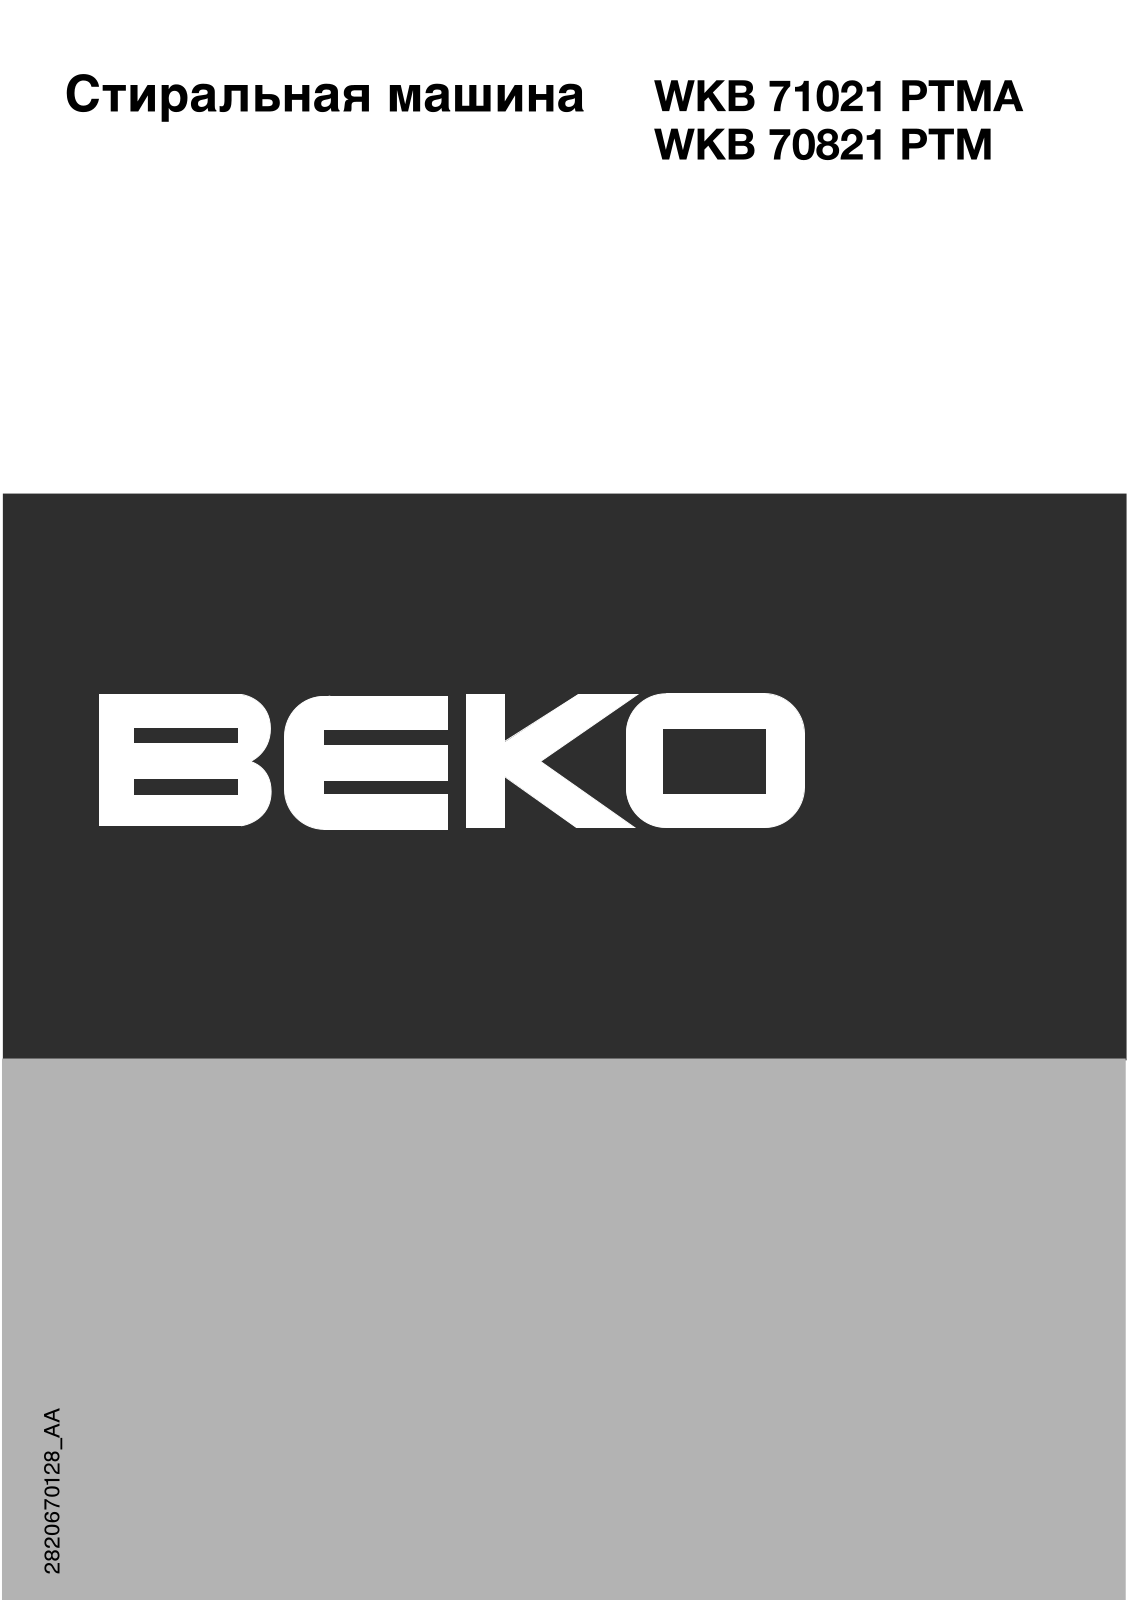 Beko WKB 71021 PTMA, WKB 70821 PTM User Manual